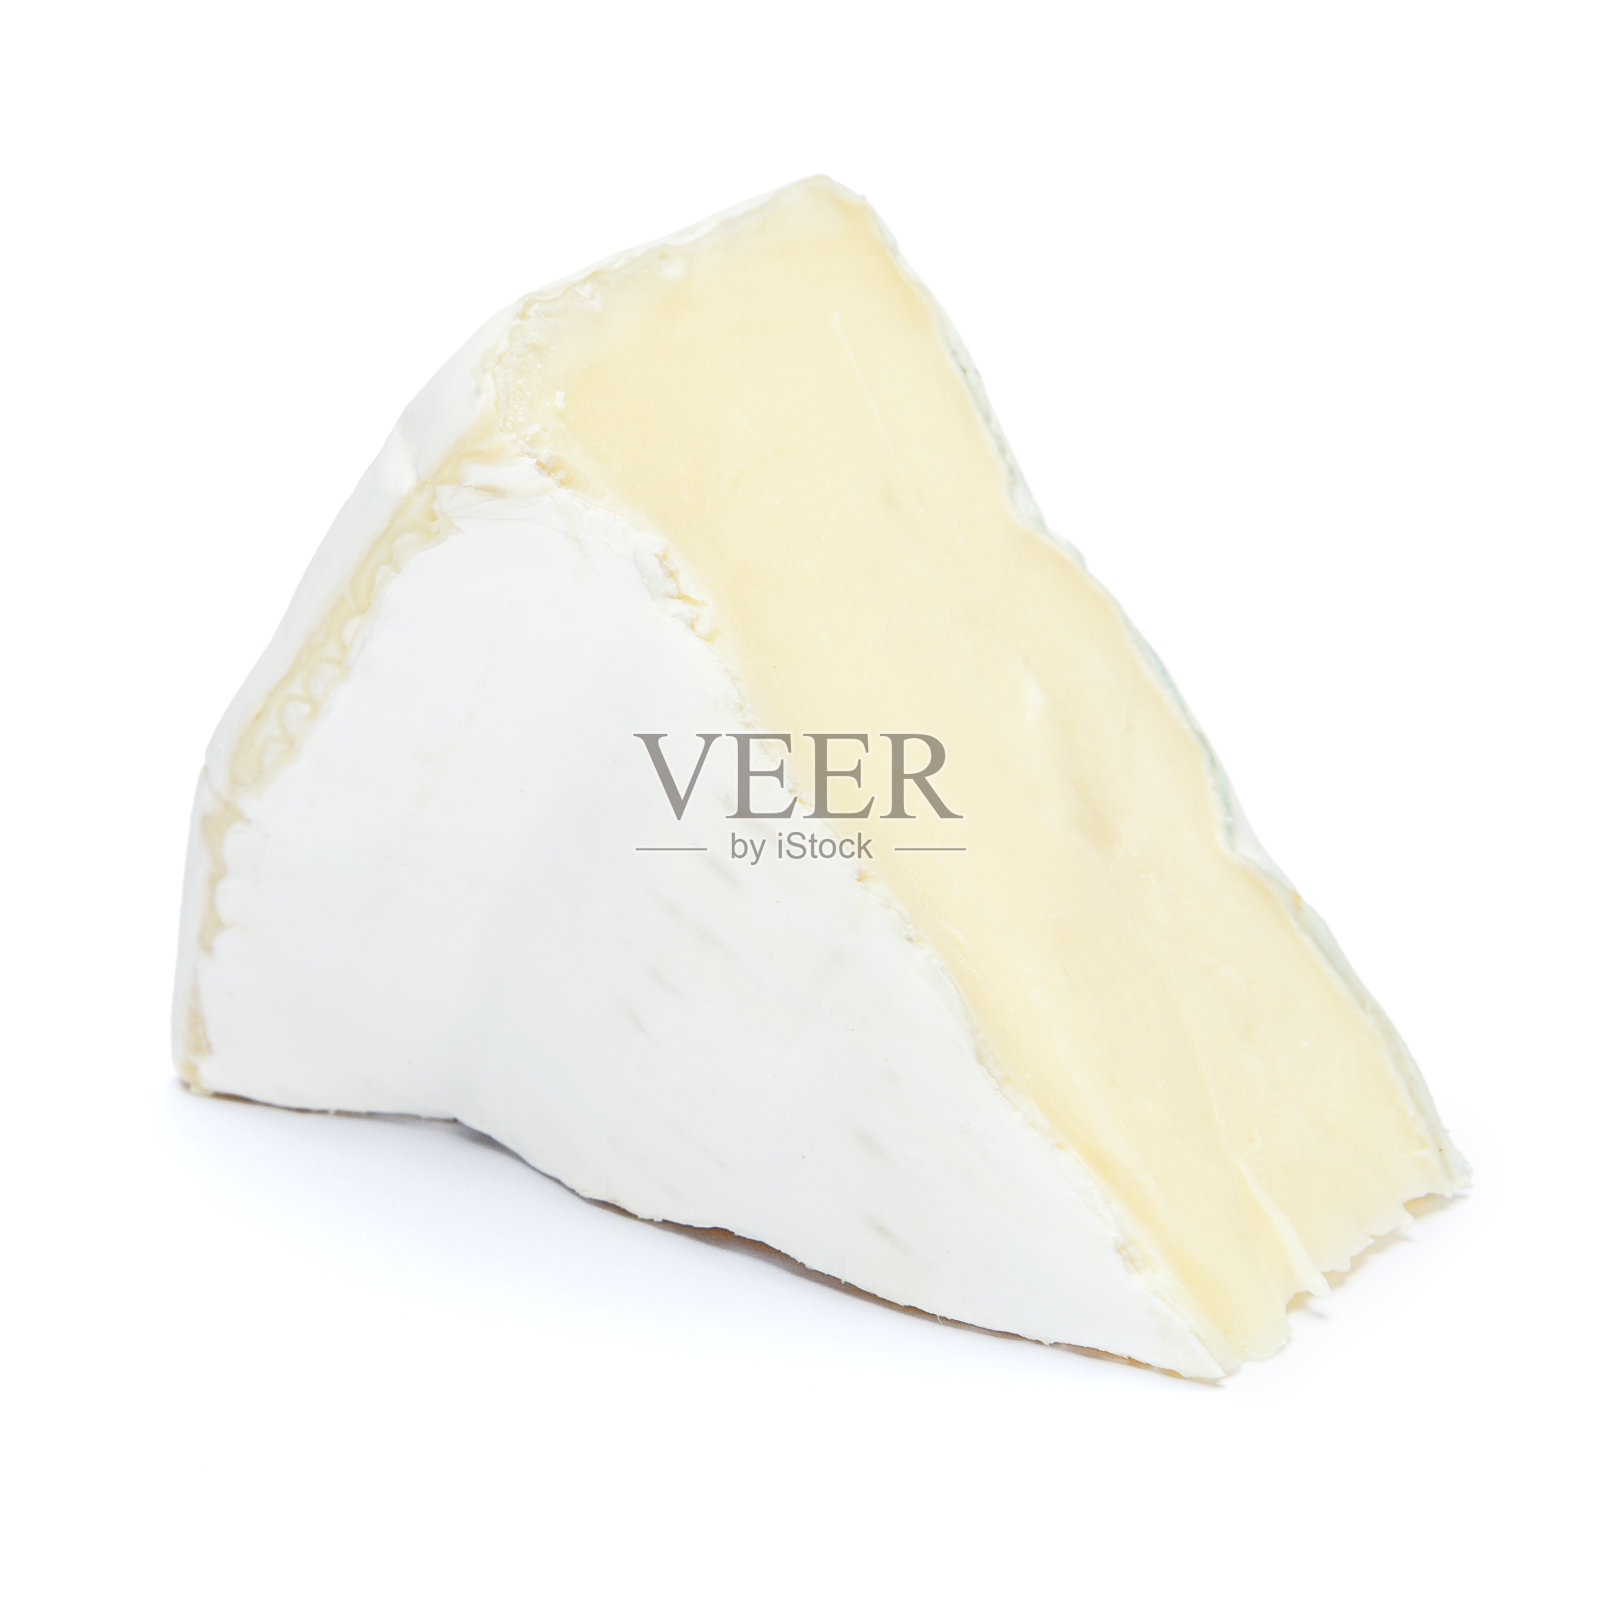 一片布里干酪或camambert奶酪在白色的背景上照片摄影图片